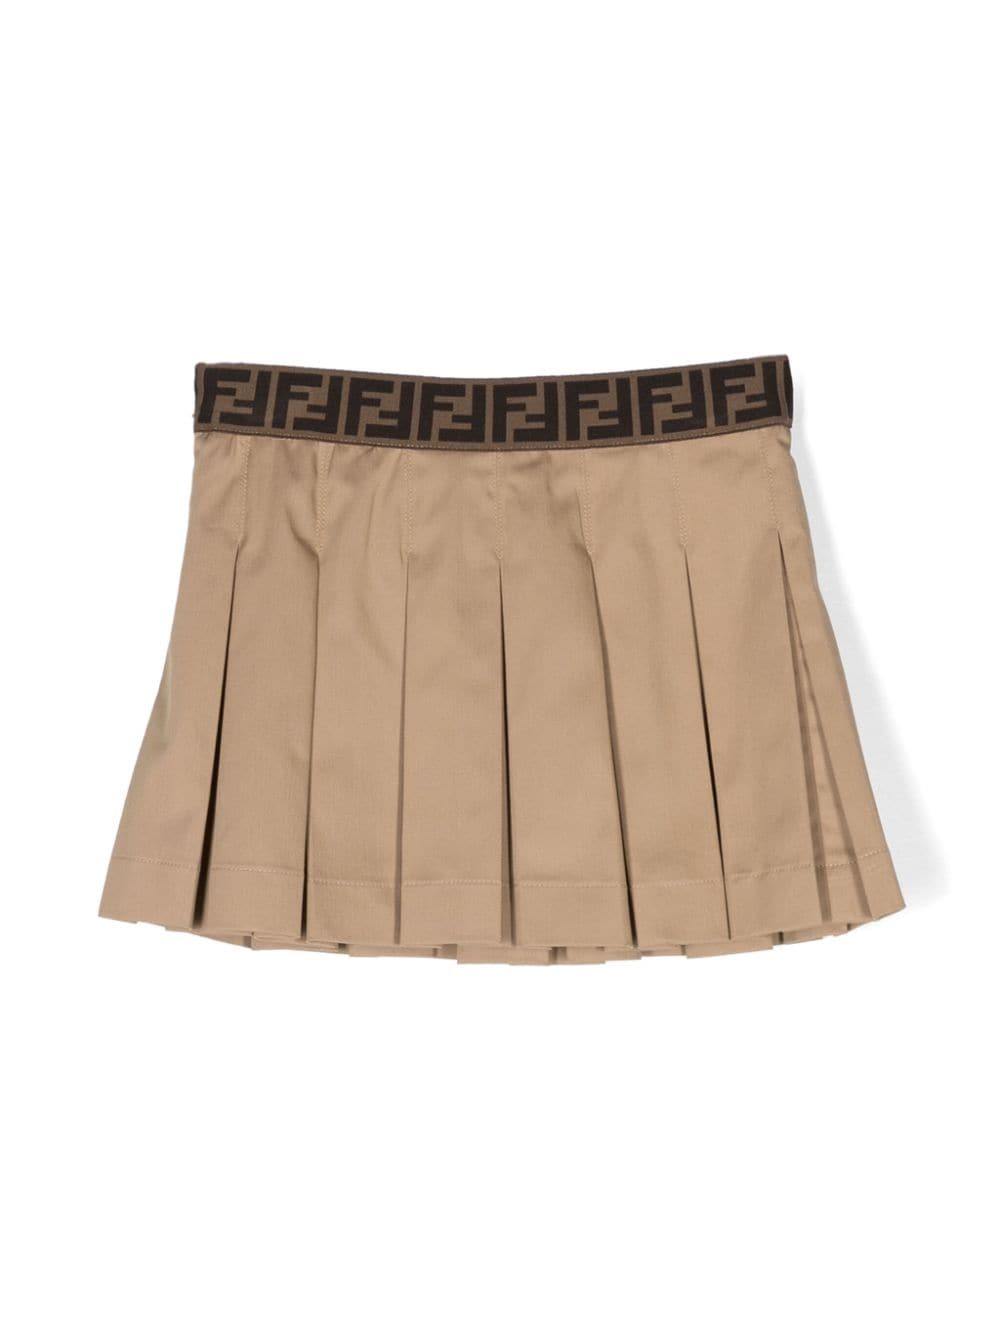 Beige skirt for girls with logo